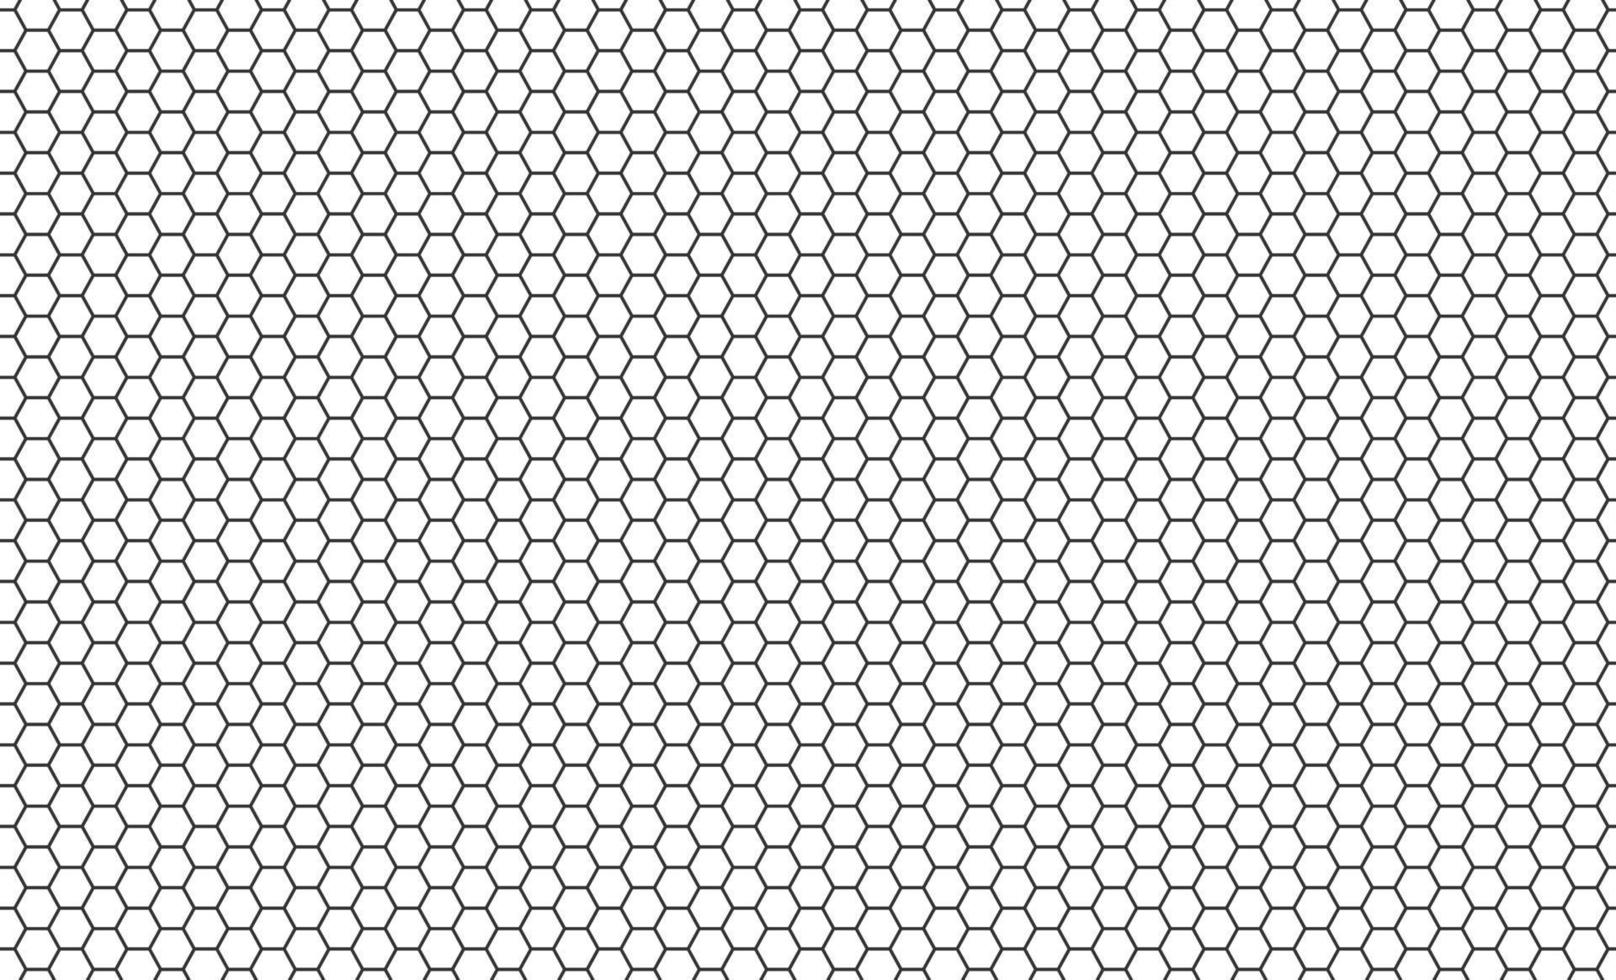 patrón sin costuras de panal hexagonal. textura sin costuras de rejilla de panal. textura de celda hexagonal. formas hexagonales de miel de abeja. Ilustración vectorial sobre fondo blanco vector